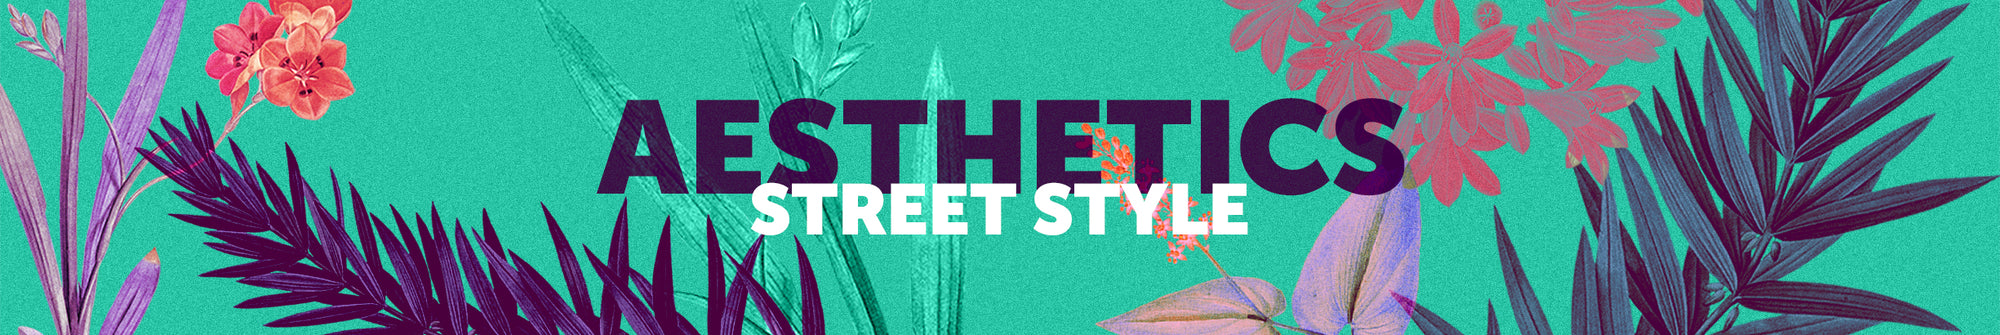  Men - Aesthetics - Street Style